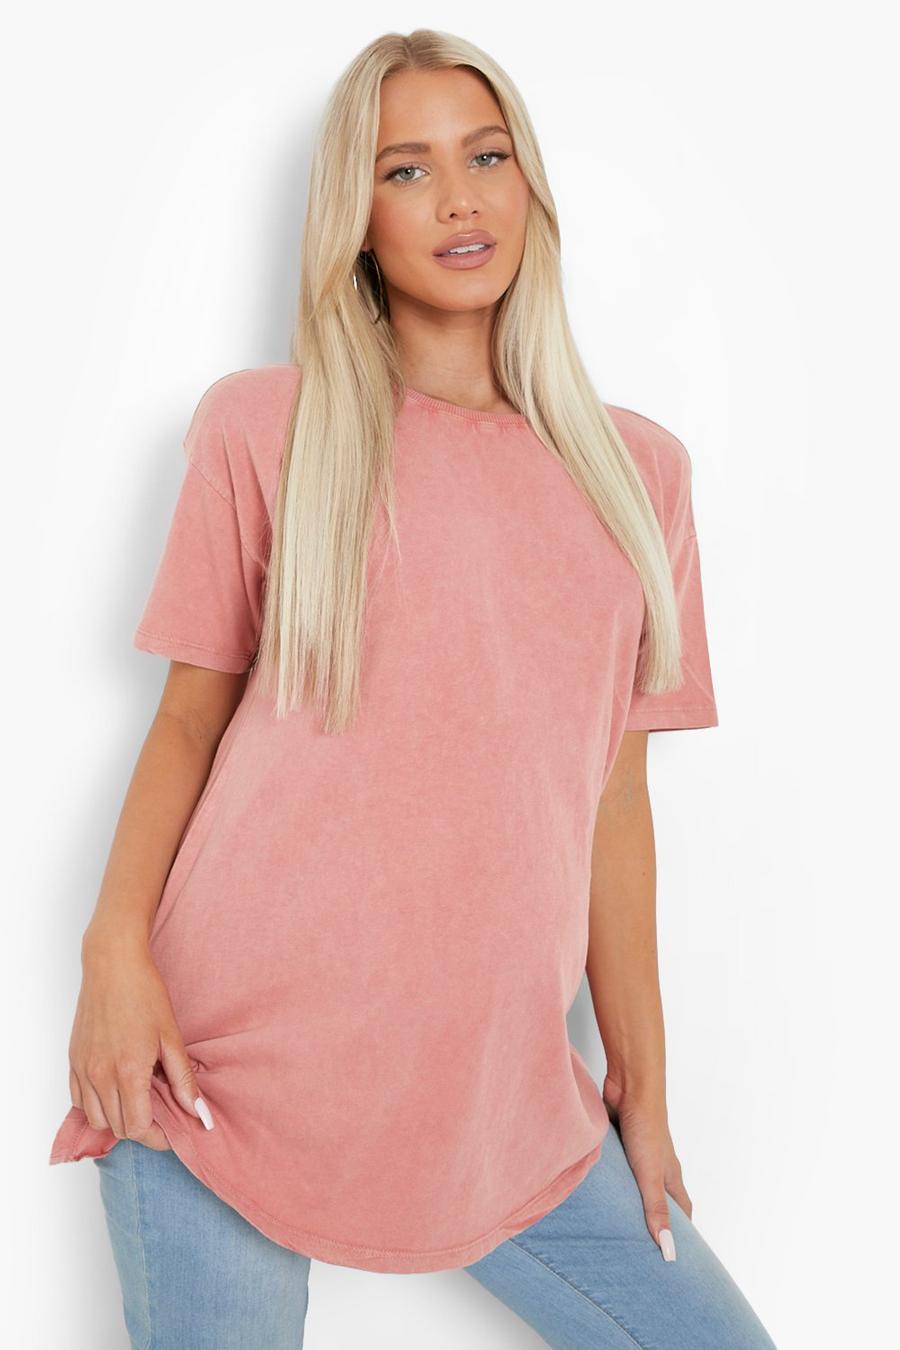 Maternité - T-shirt délavé, Dusty rose pink